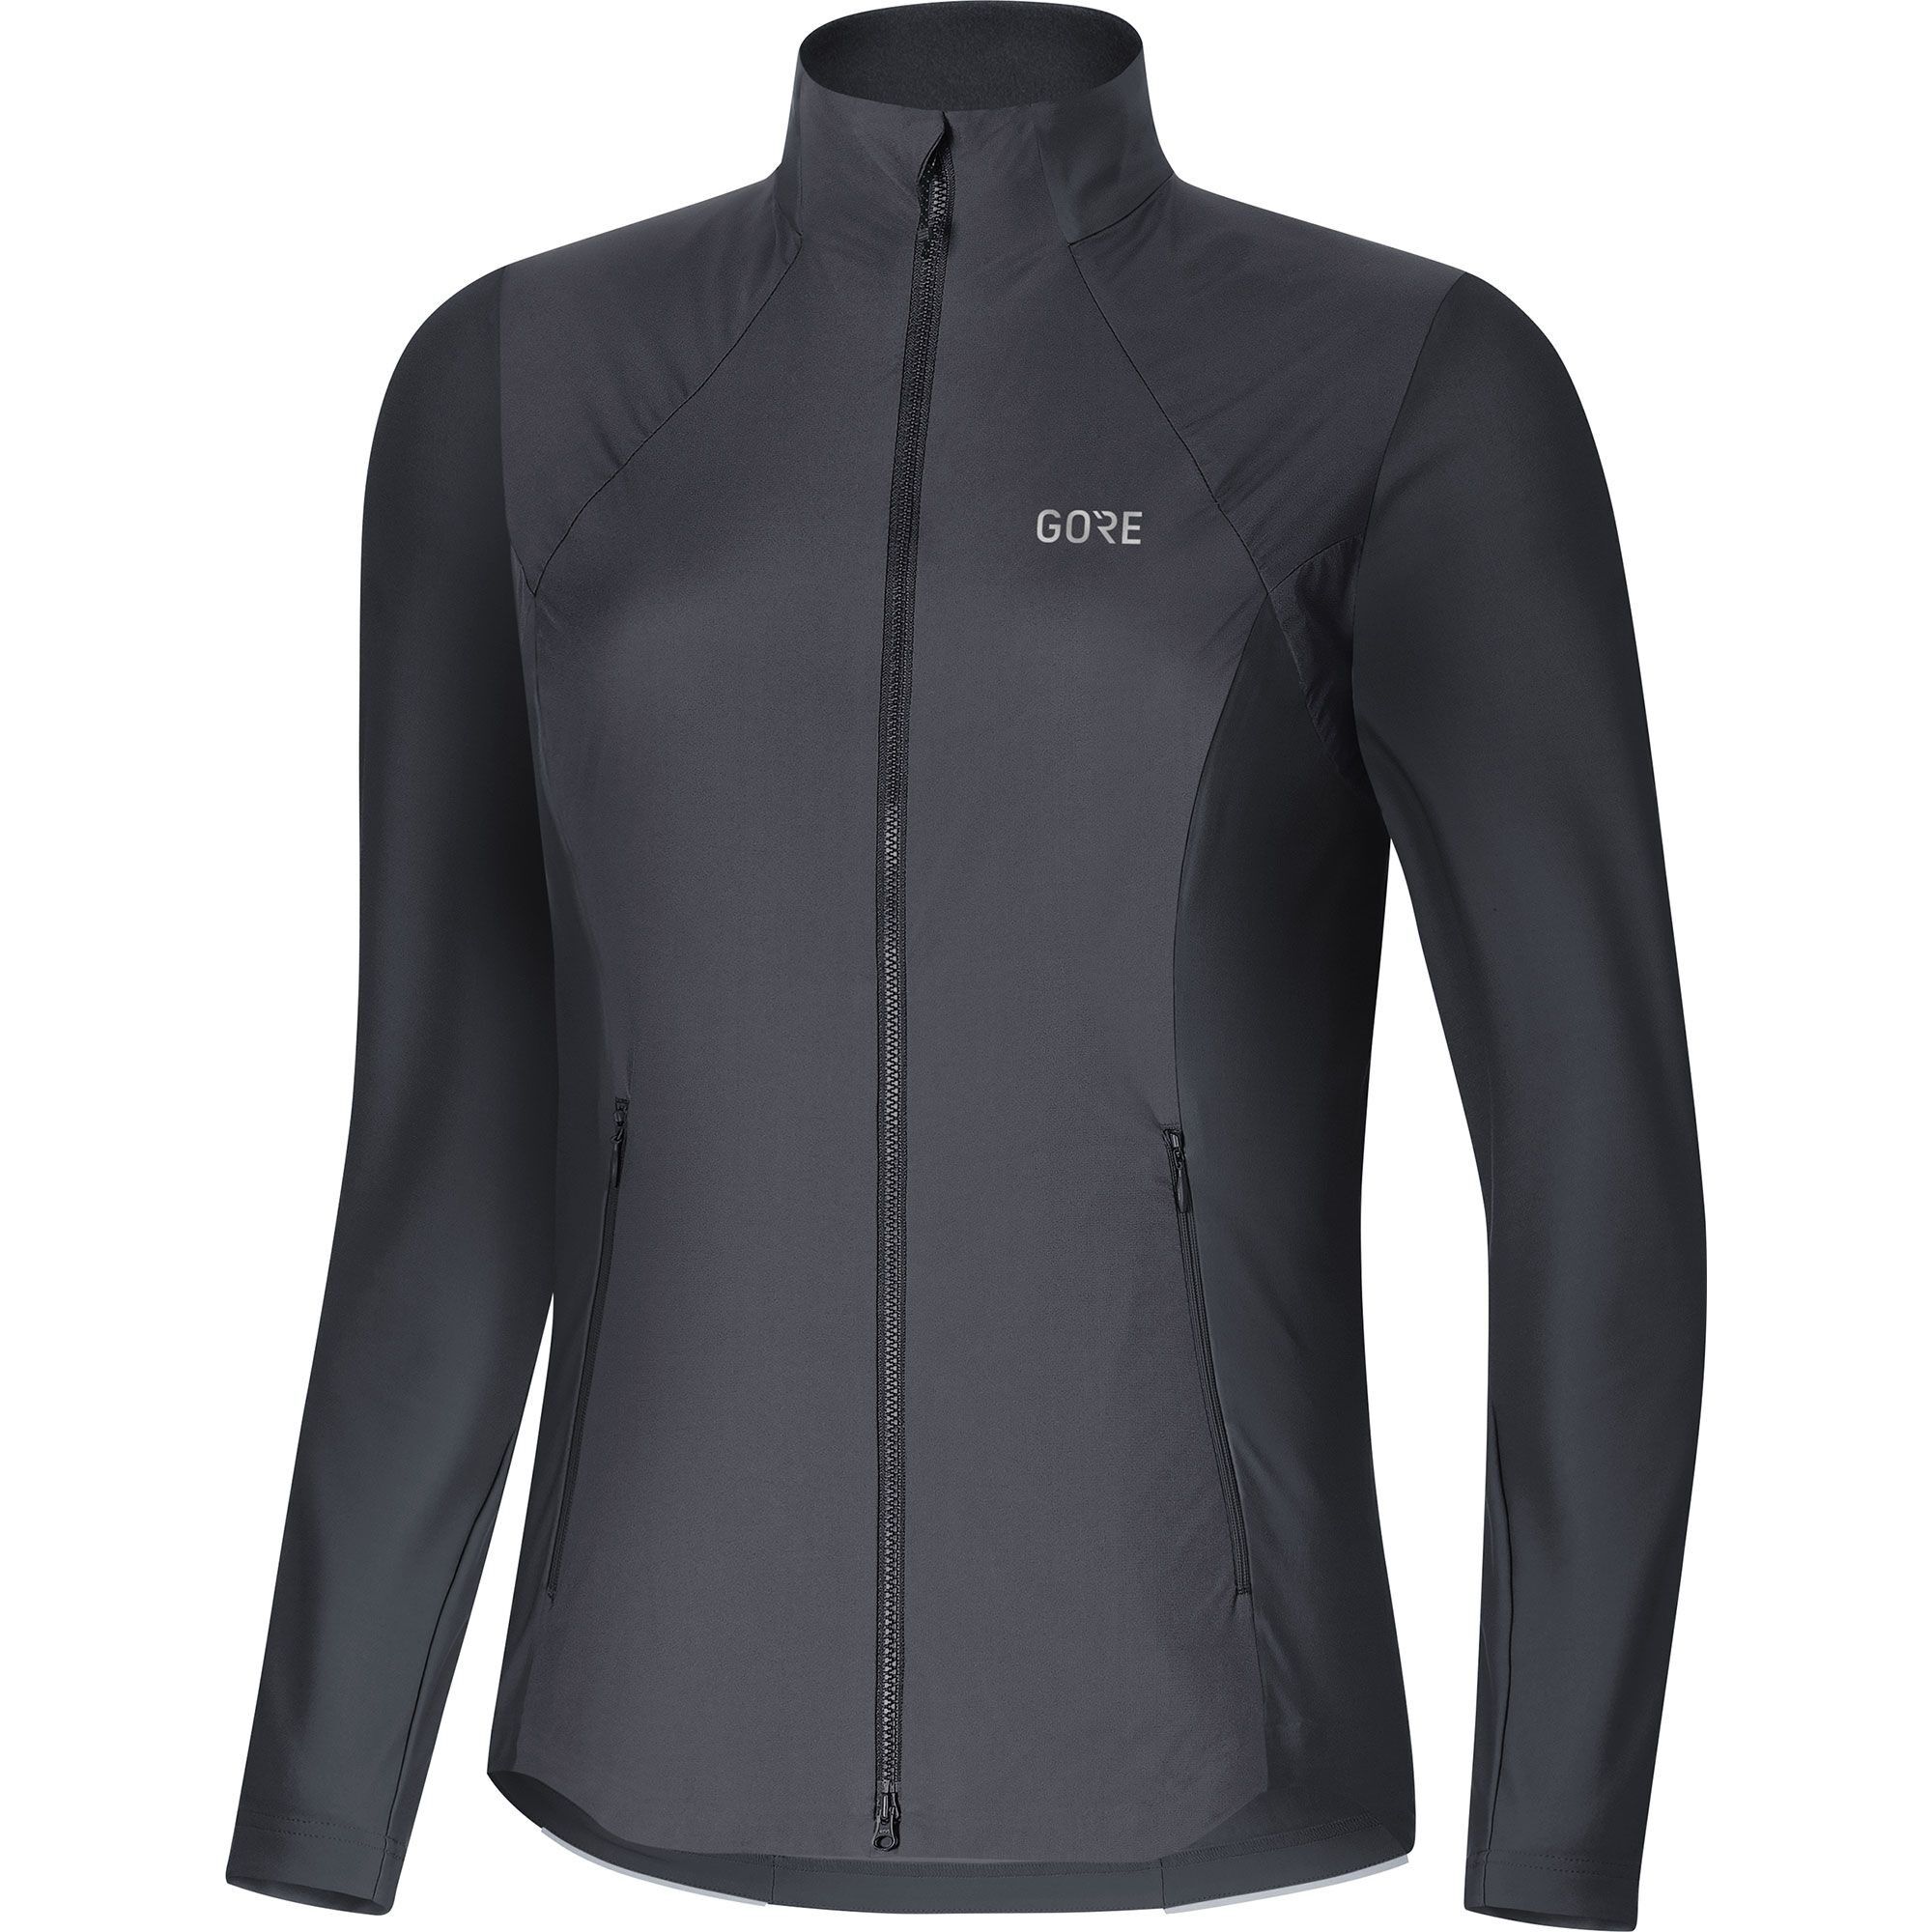 Gore Wear R5 Windstopper Long Sleeve Shirt - Windproof jacket - Women's